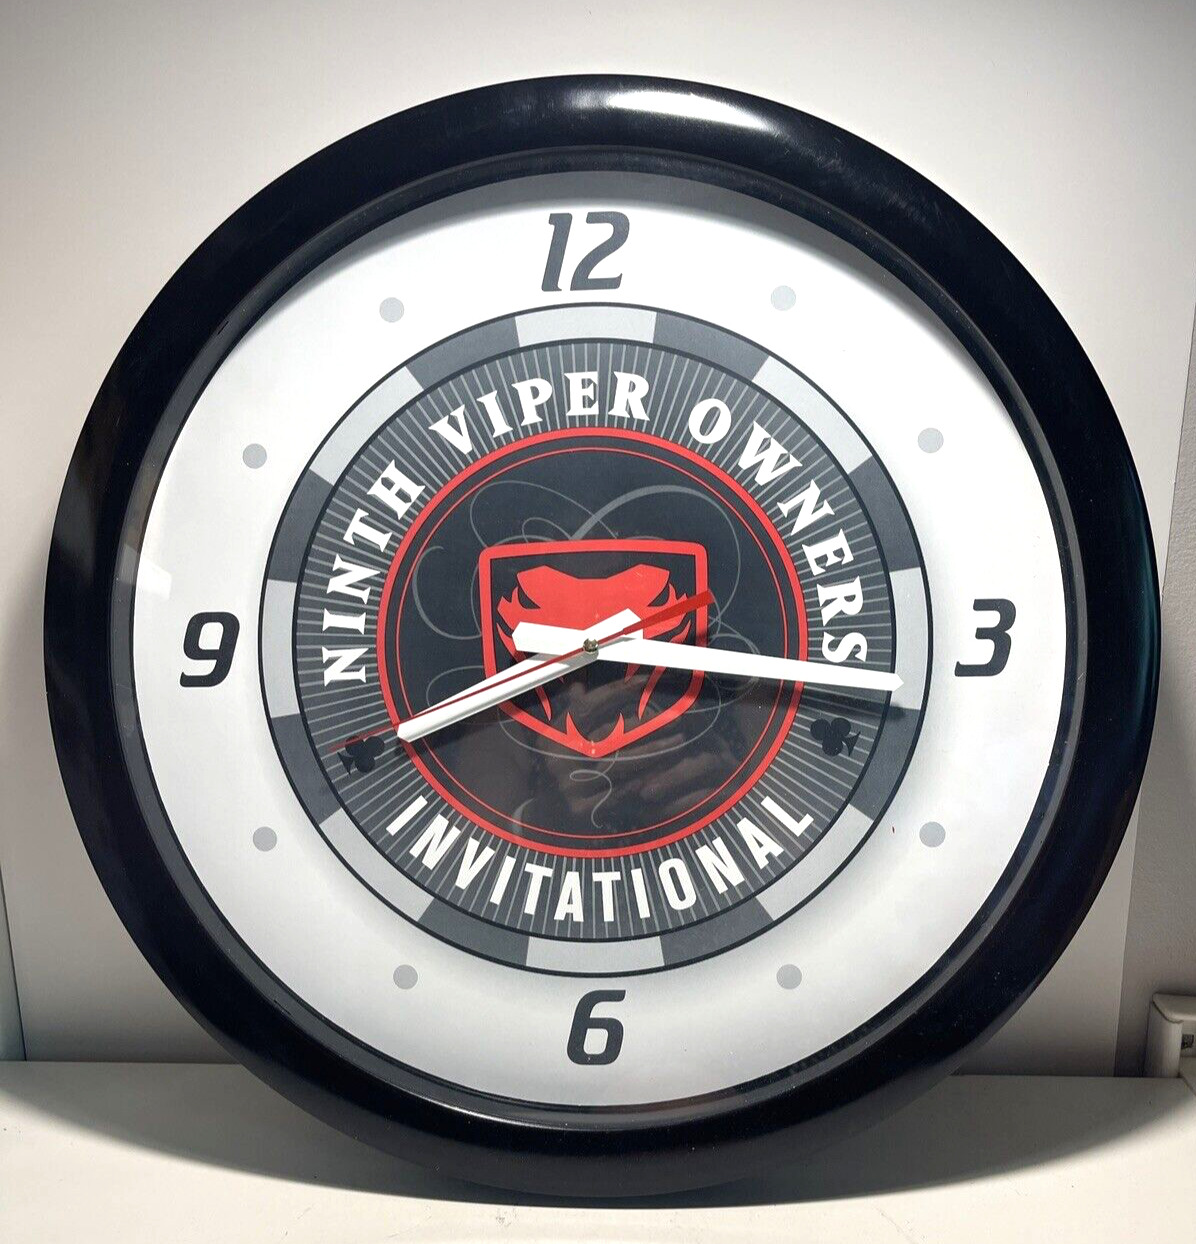 RARE 9th dodge viper owners invitational round clock